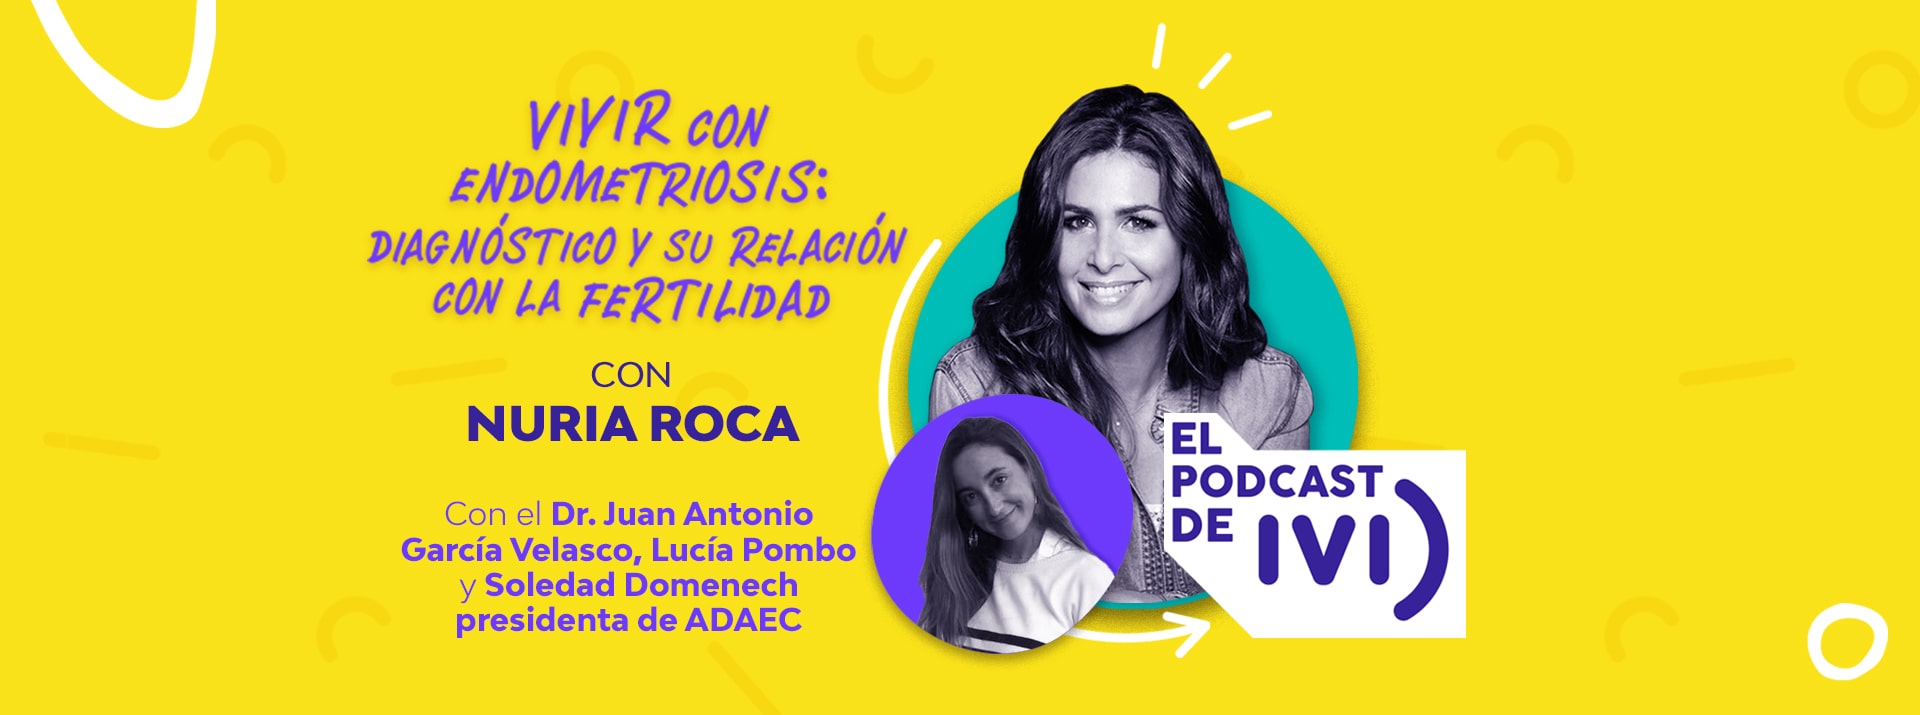 El podcast de IVI con Nuria Roca ep 07: Vivir con Endometriosis: diagnóstico y su relación con la fertilidad